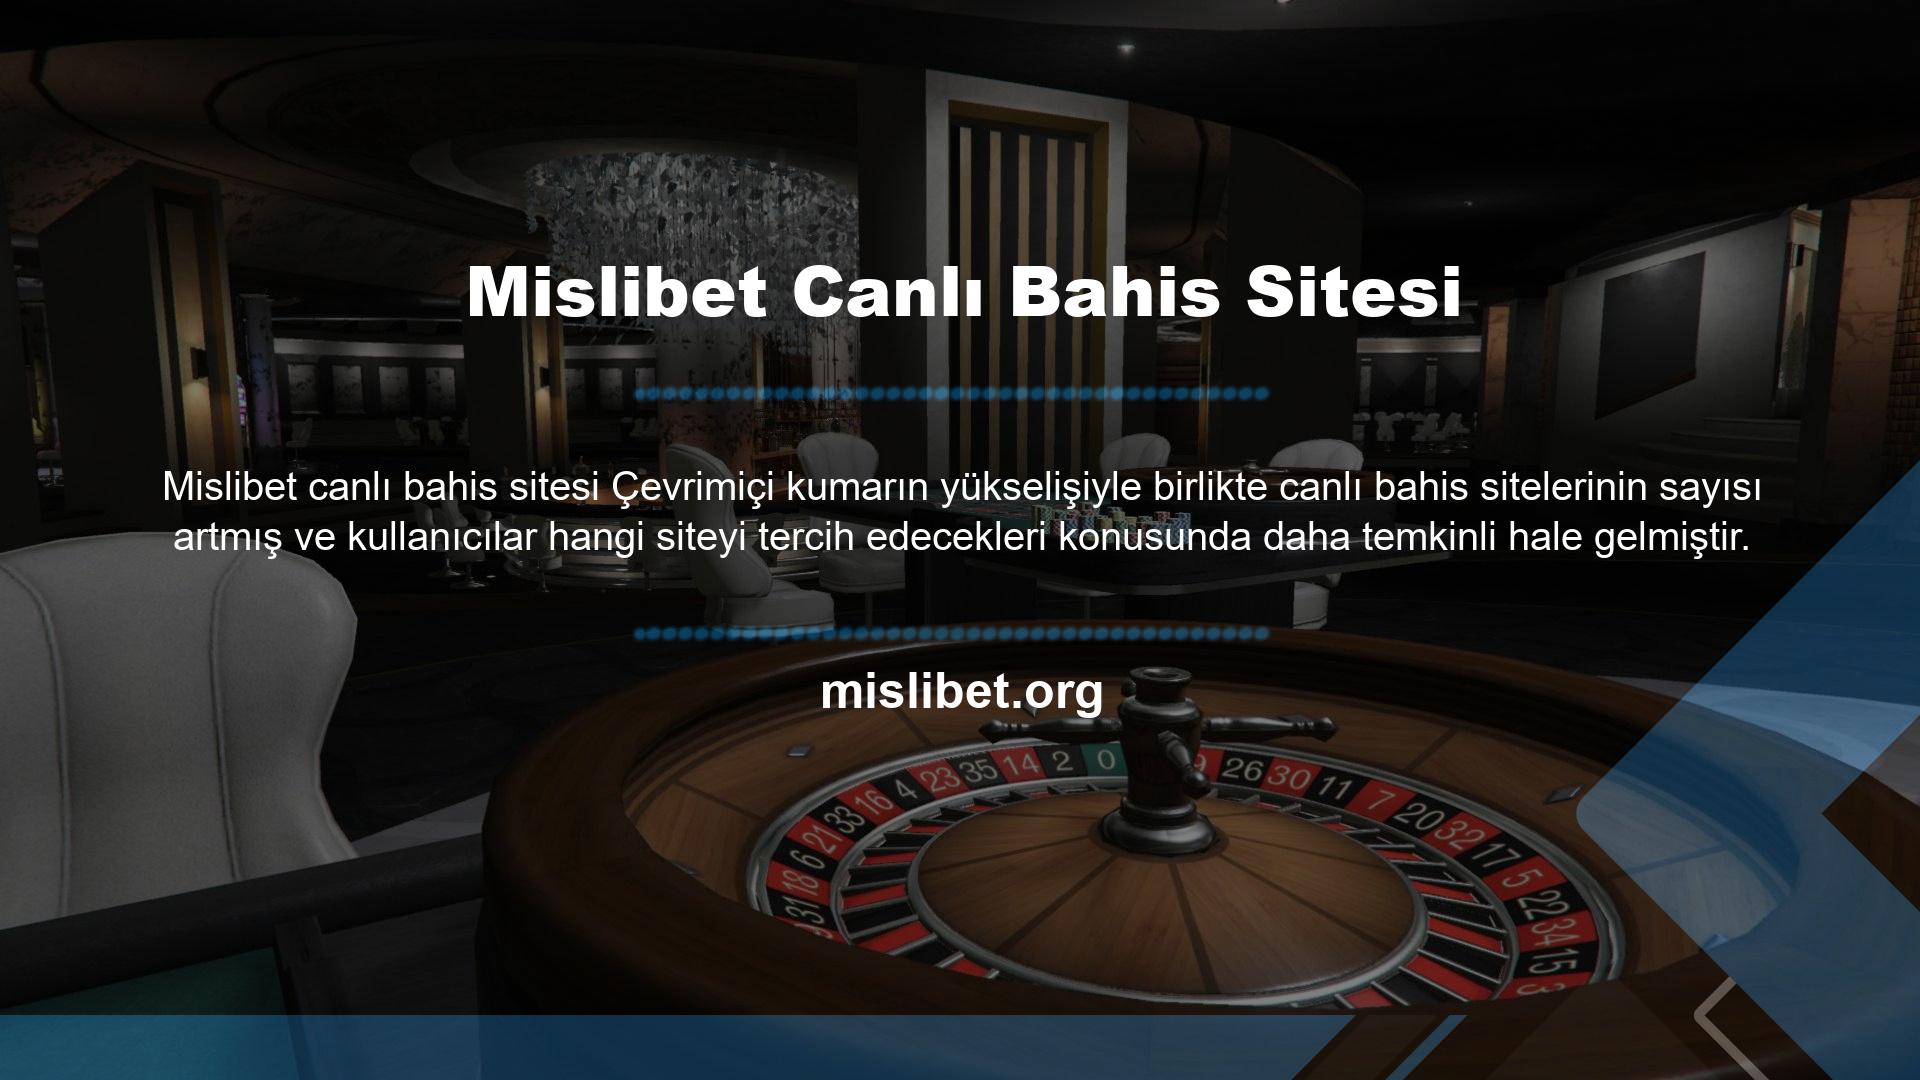 Mislibet, Türkiye'de hizmet sunan en popüler çevrimiçi bahis sitelerinden biridir